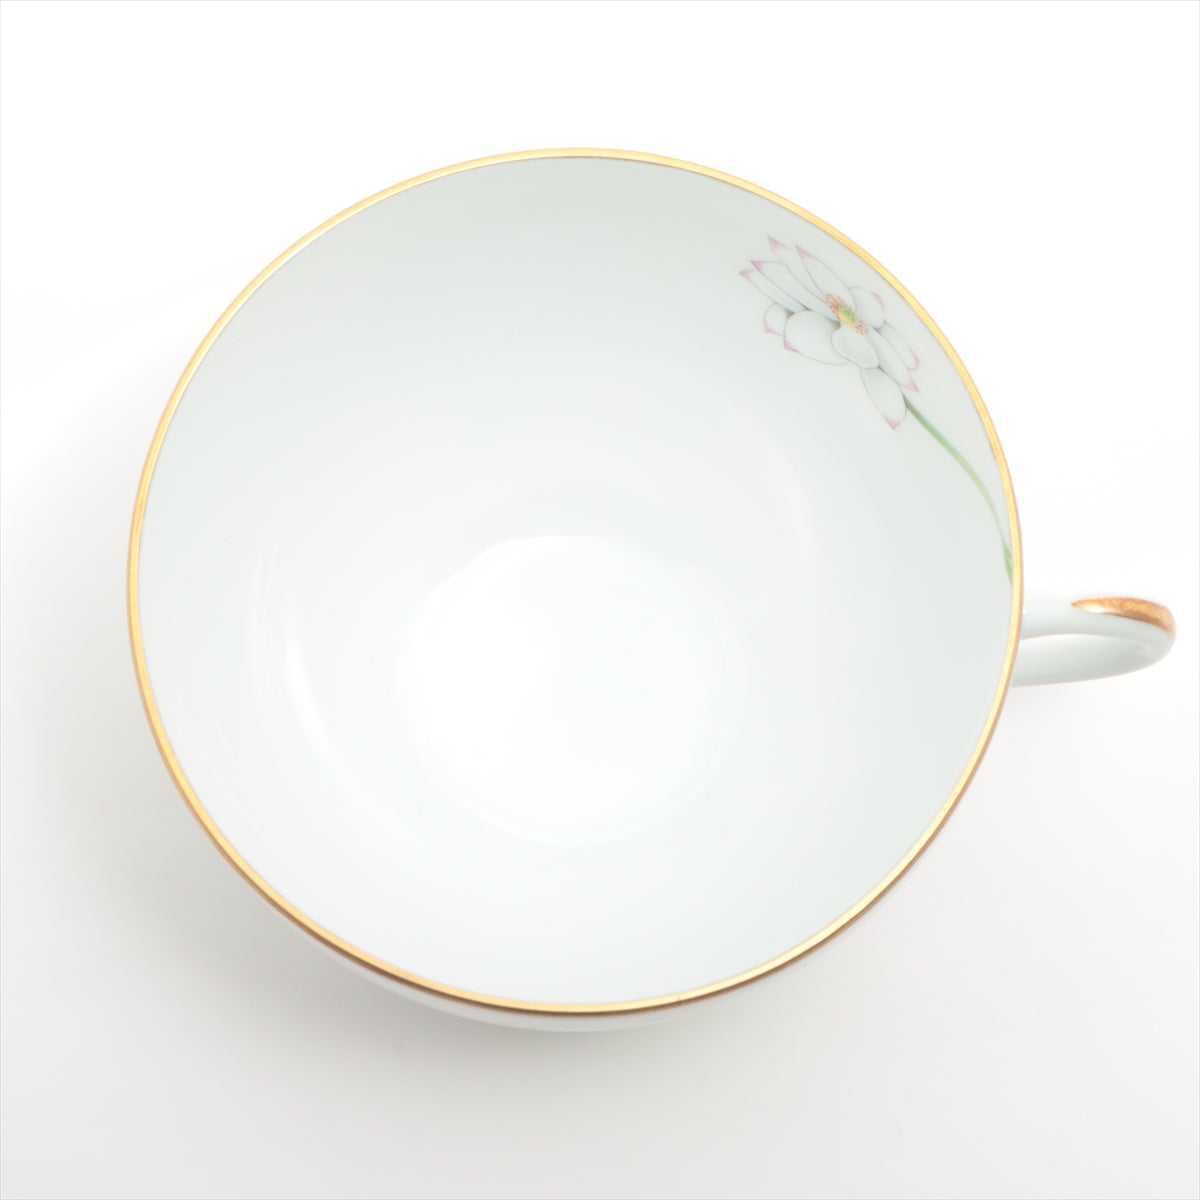 エルメス ナイルの庭 カップ&ソーサー 陶器 ホワイト 底印プレート「ひょうたん」カップ「なまず」